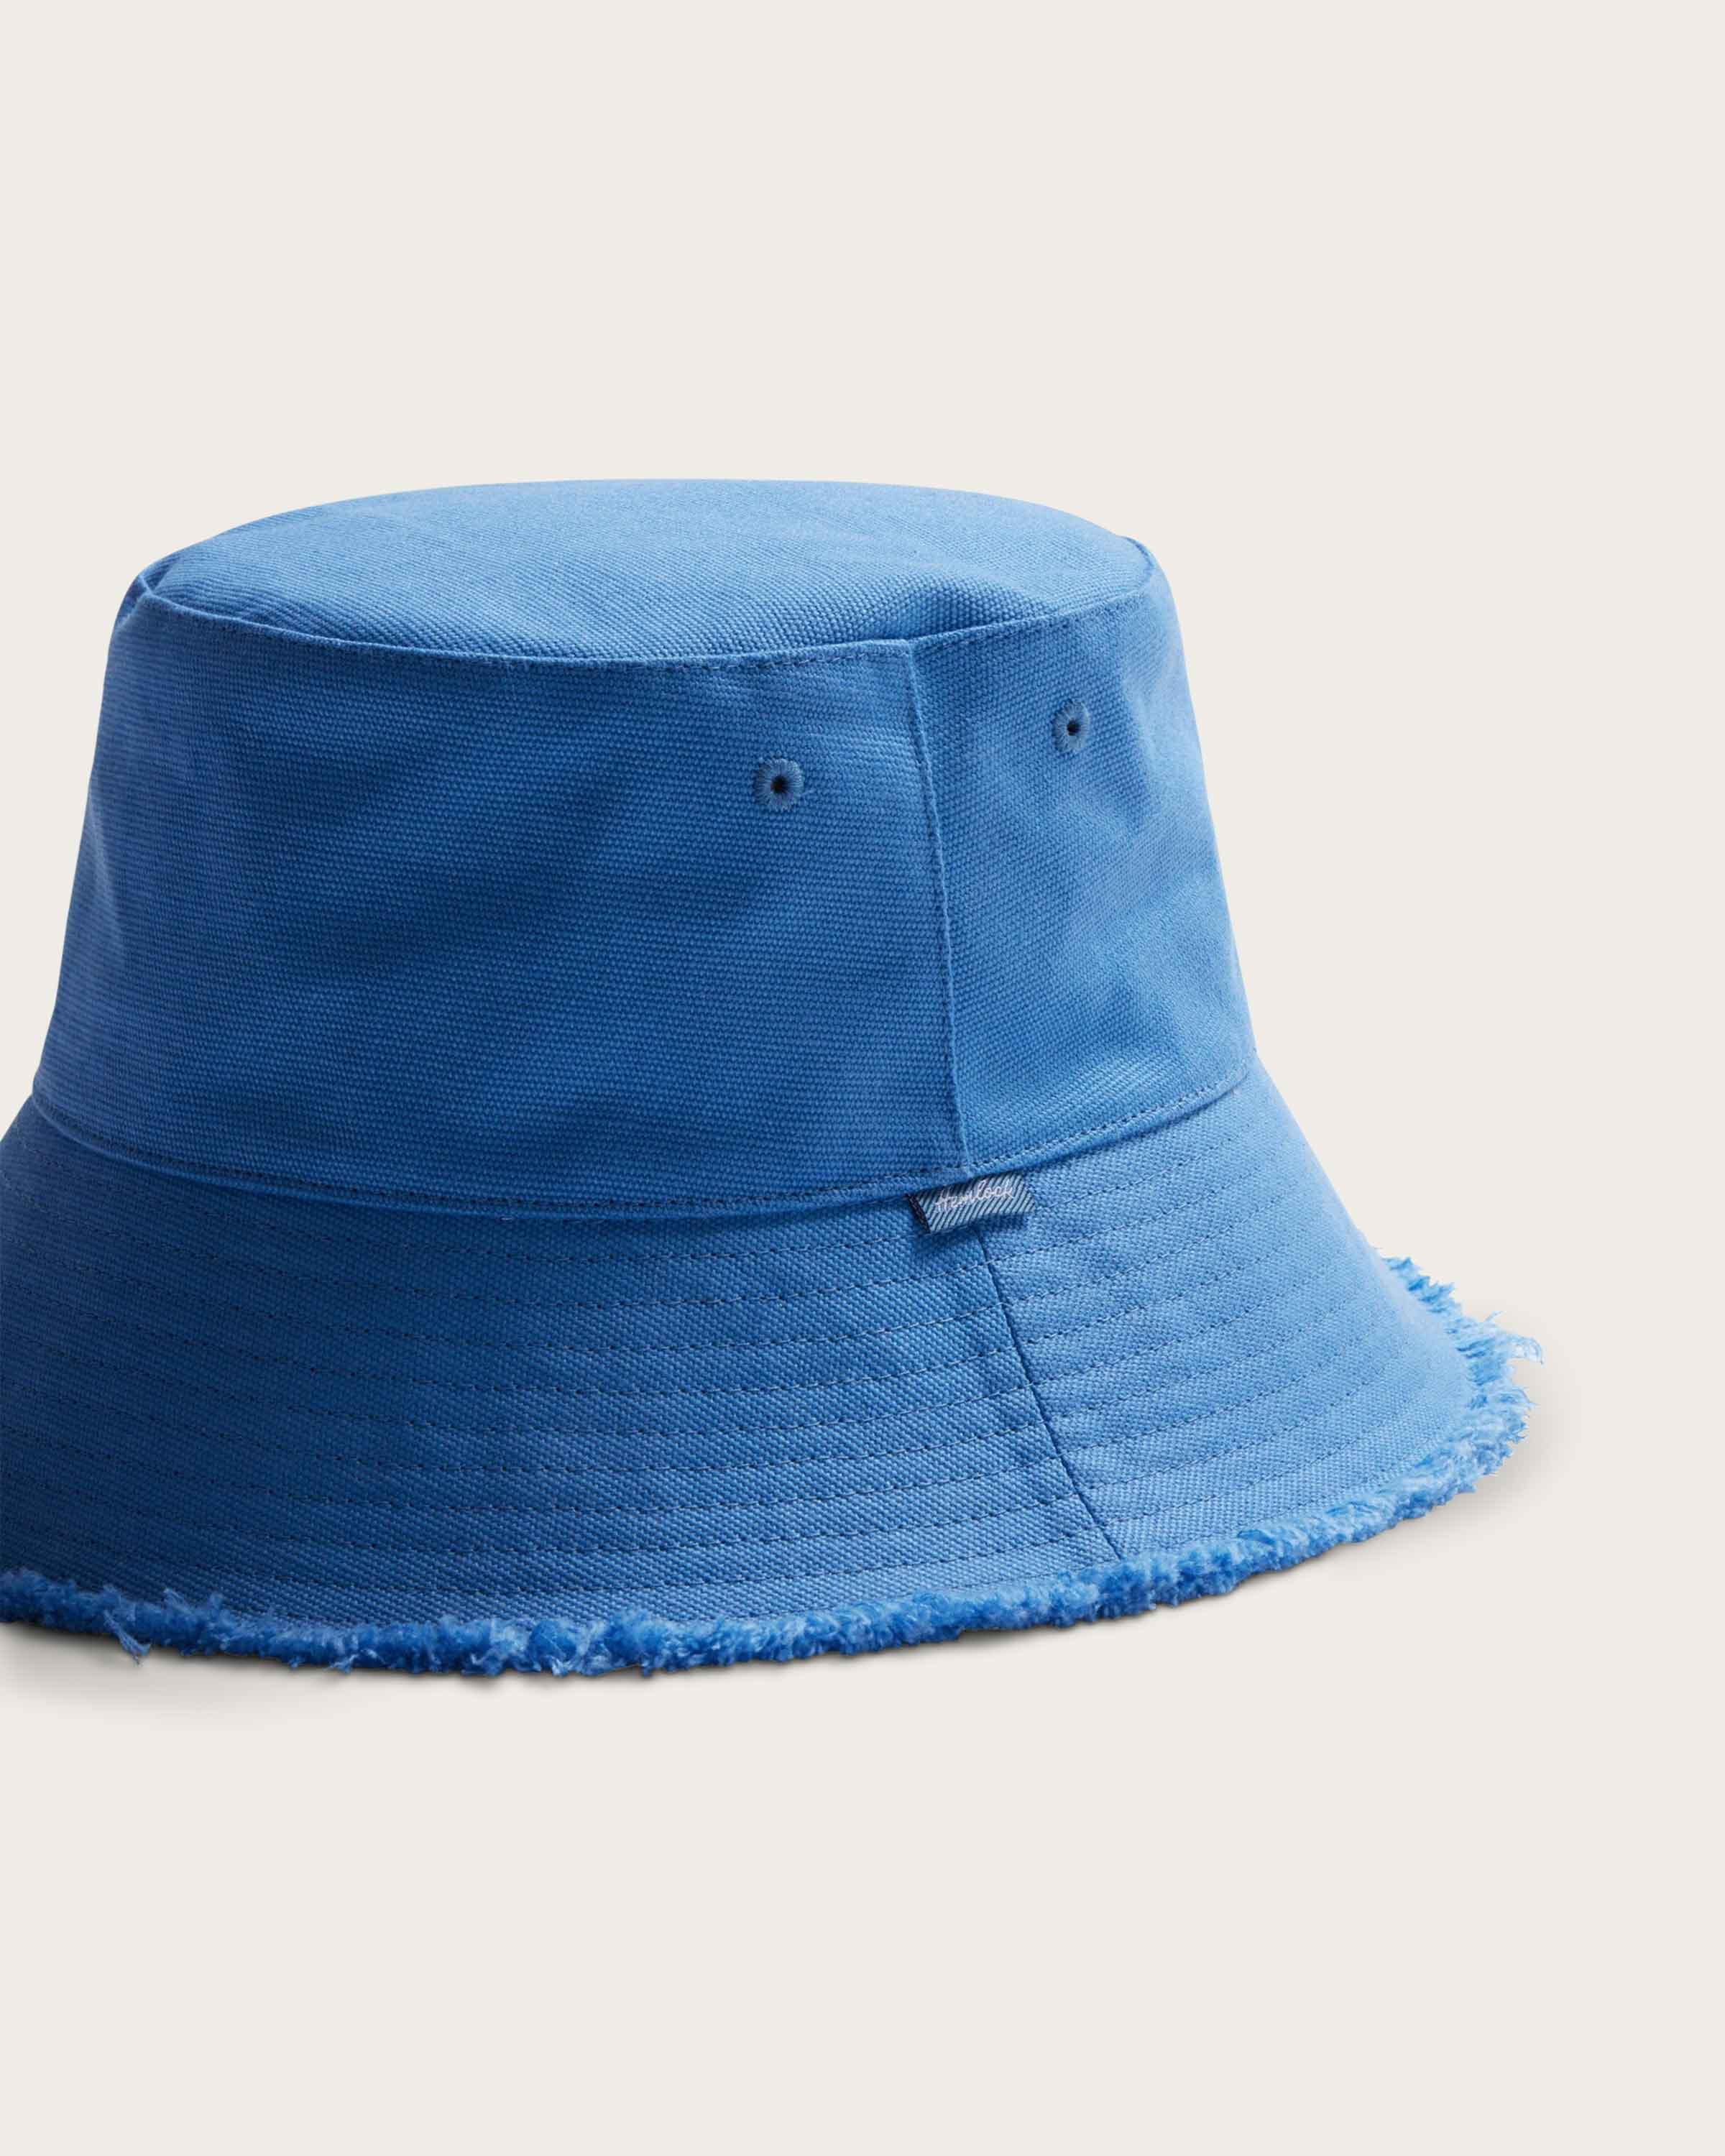 Coronado Bucket in Faded Denim - undefined - Hemlock Hat Co. Buckets